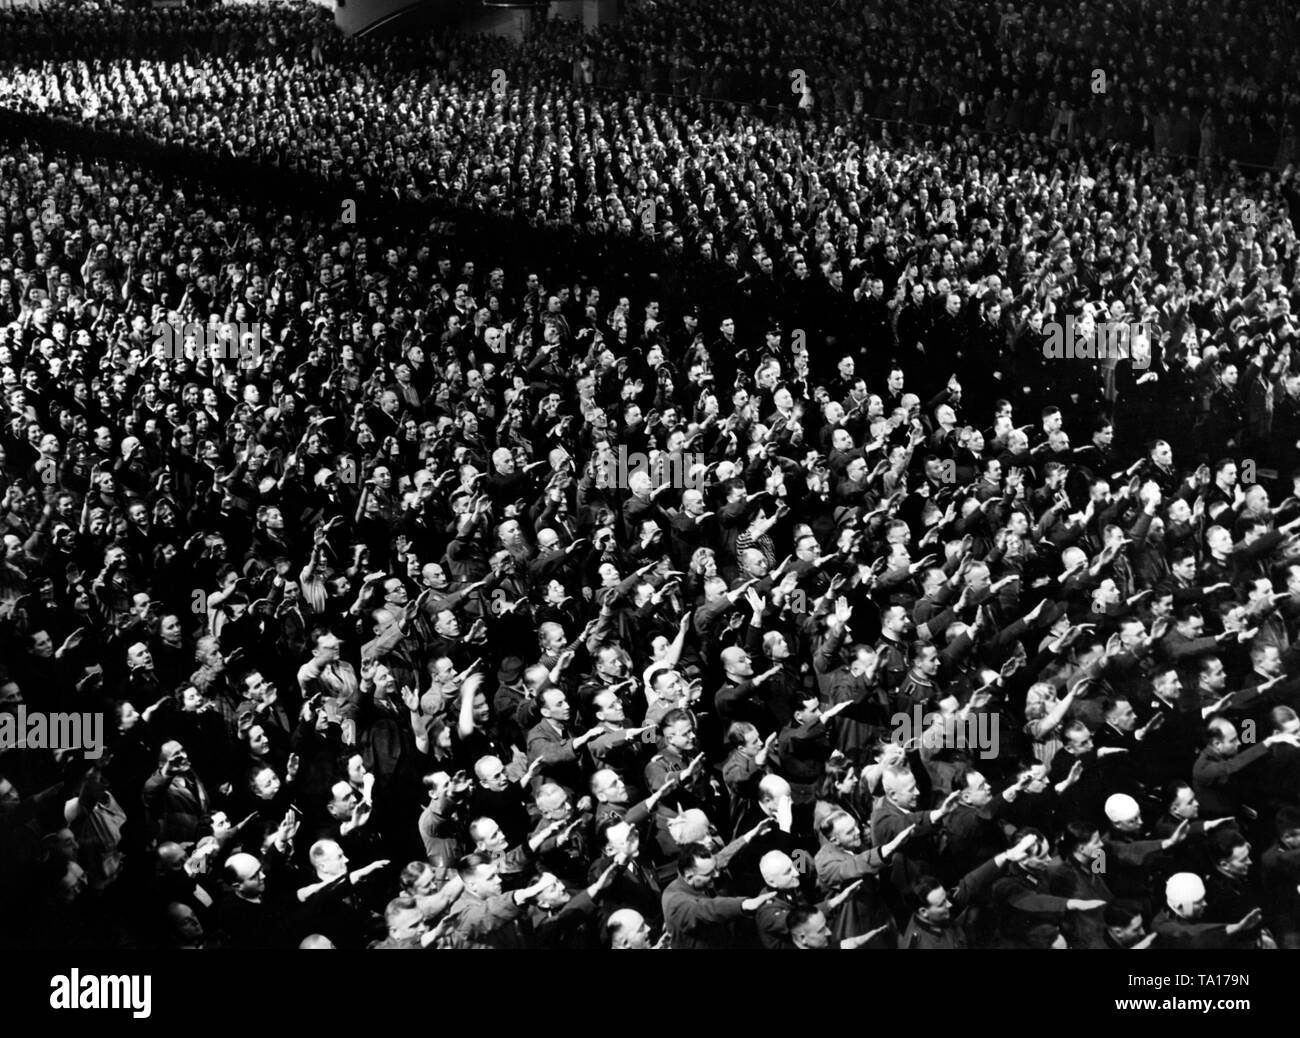 Vue du public lors d'un grand rassemblement à l'occasion de l'ouverture de la 3e Kriegswinterhilfswerk dans le Berlin Sportpalast, où Adolf Hitler a prononcé un discours. La foule a augmenté, et effectue le salut hitlérien. Banque D'Images